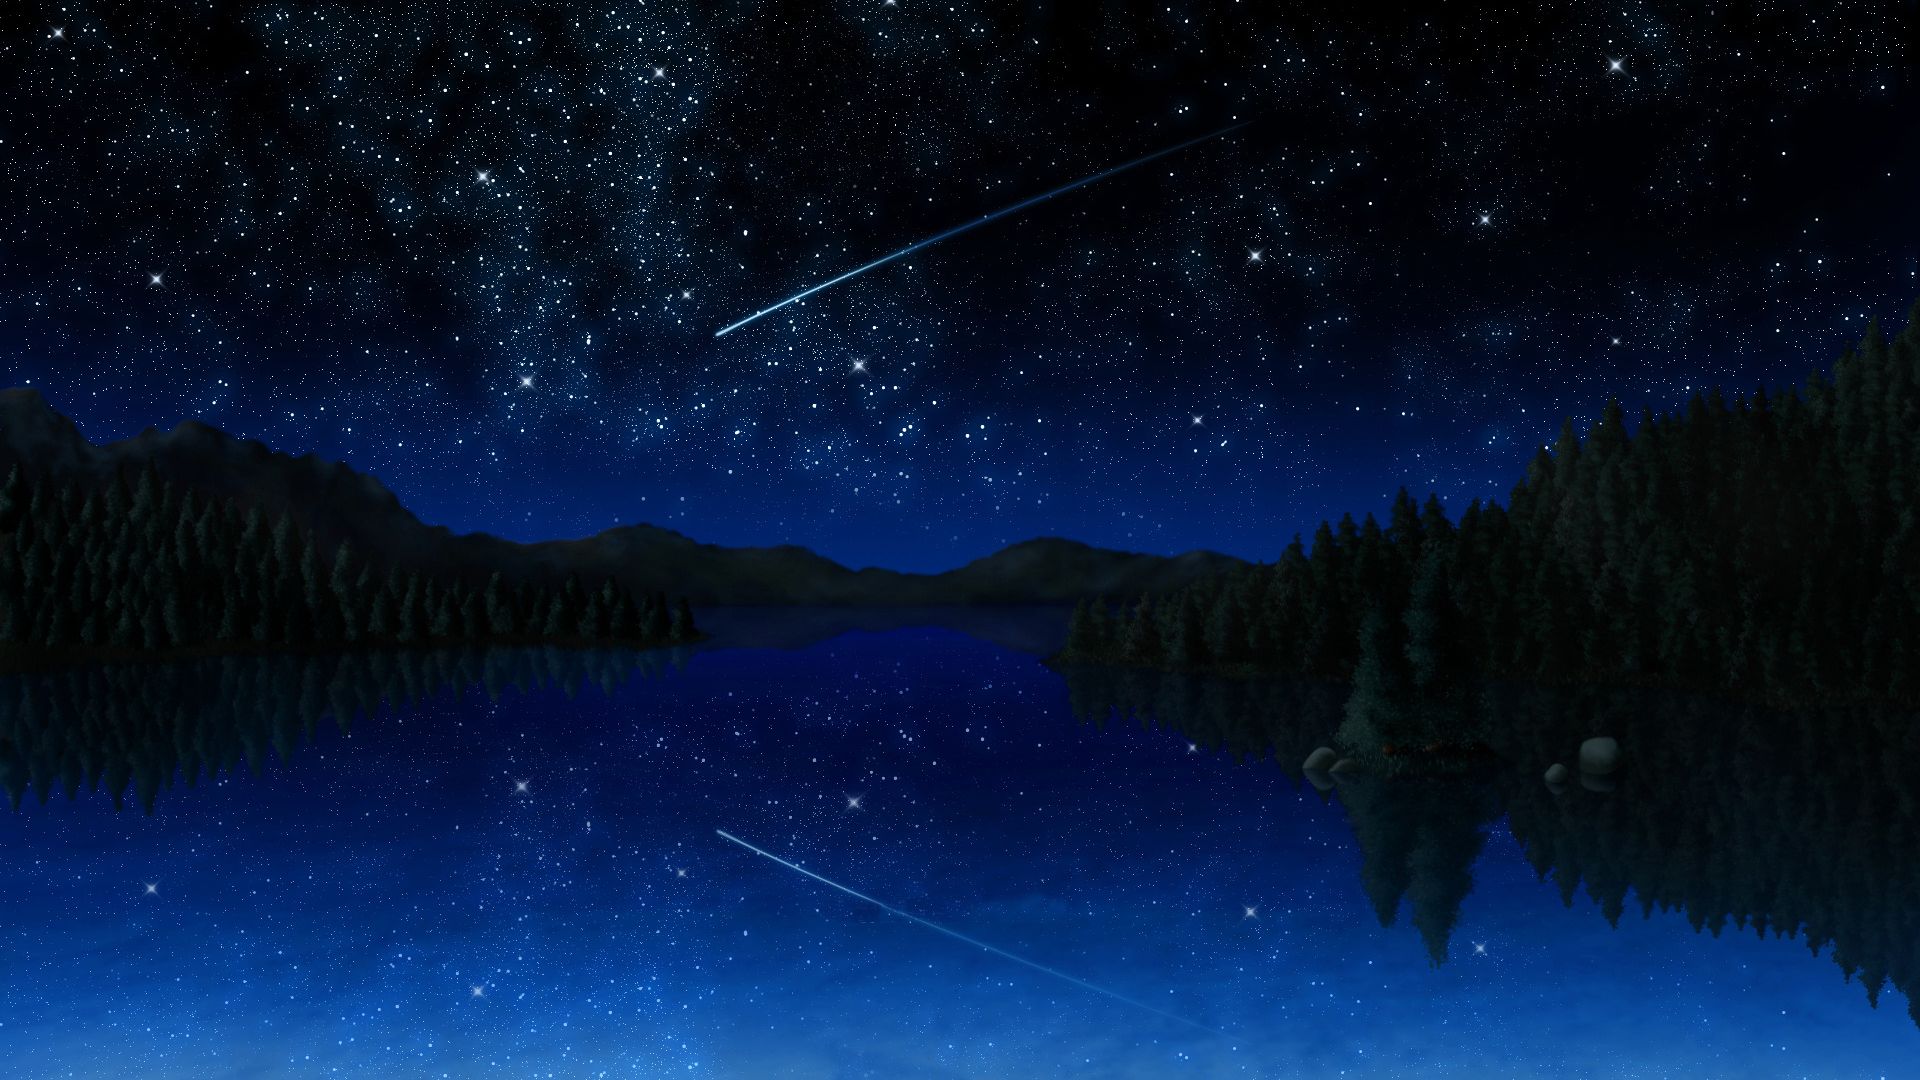 Anime Sky Full Of Stars HD Wallpaperx1080. Anime scenery wallpaper, Anime scenery, Scenery wallpaper